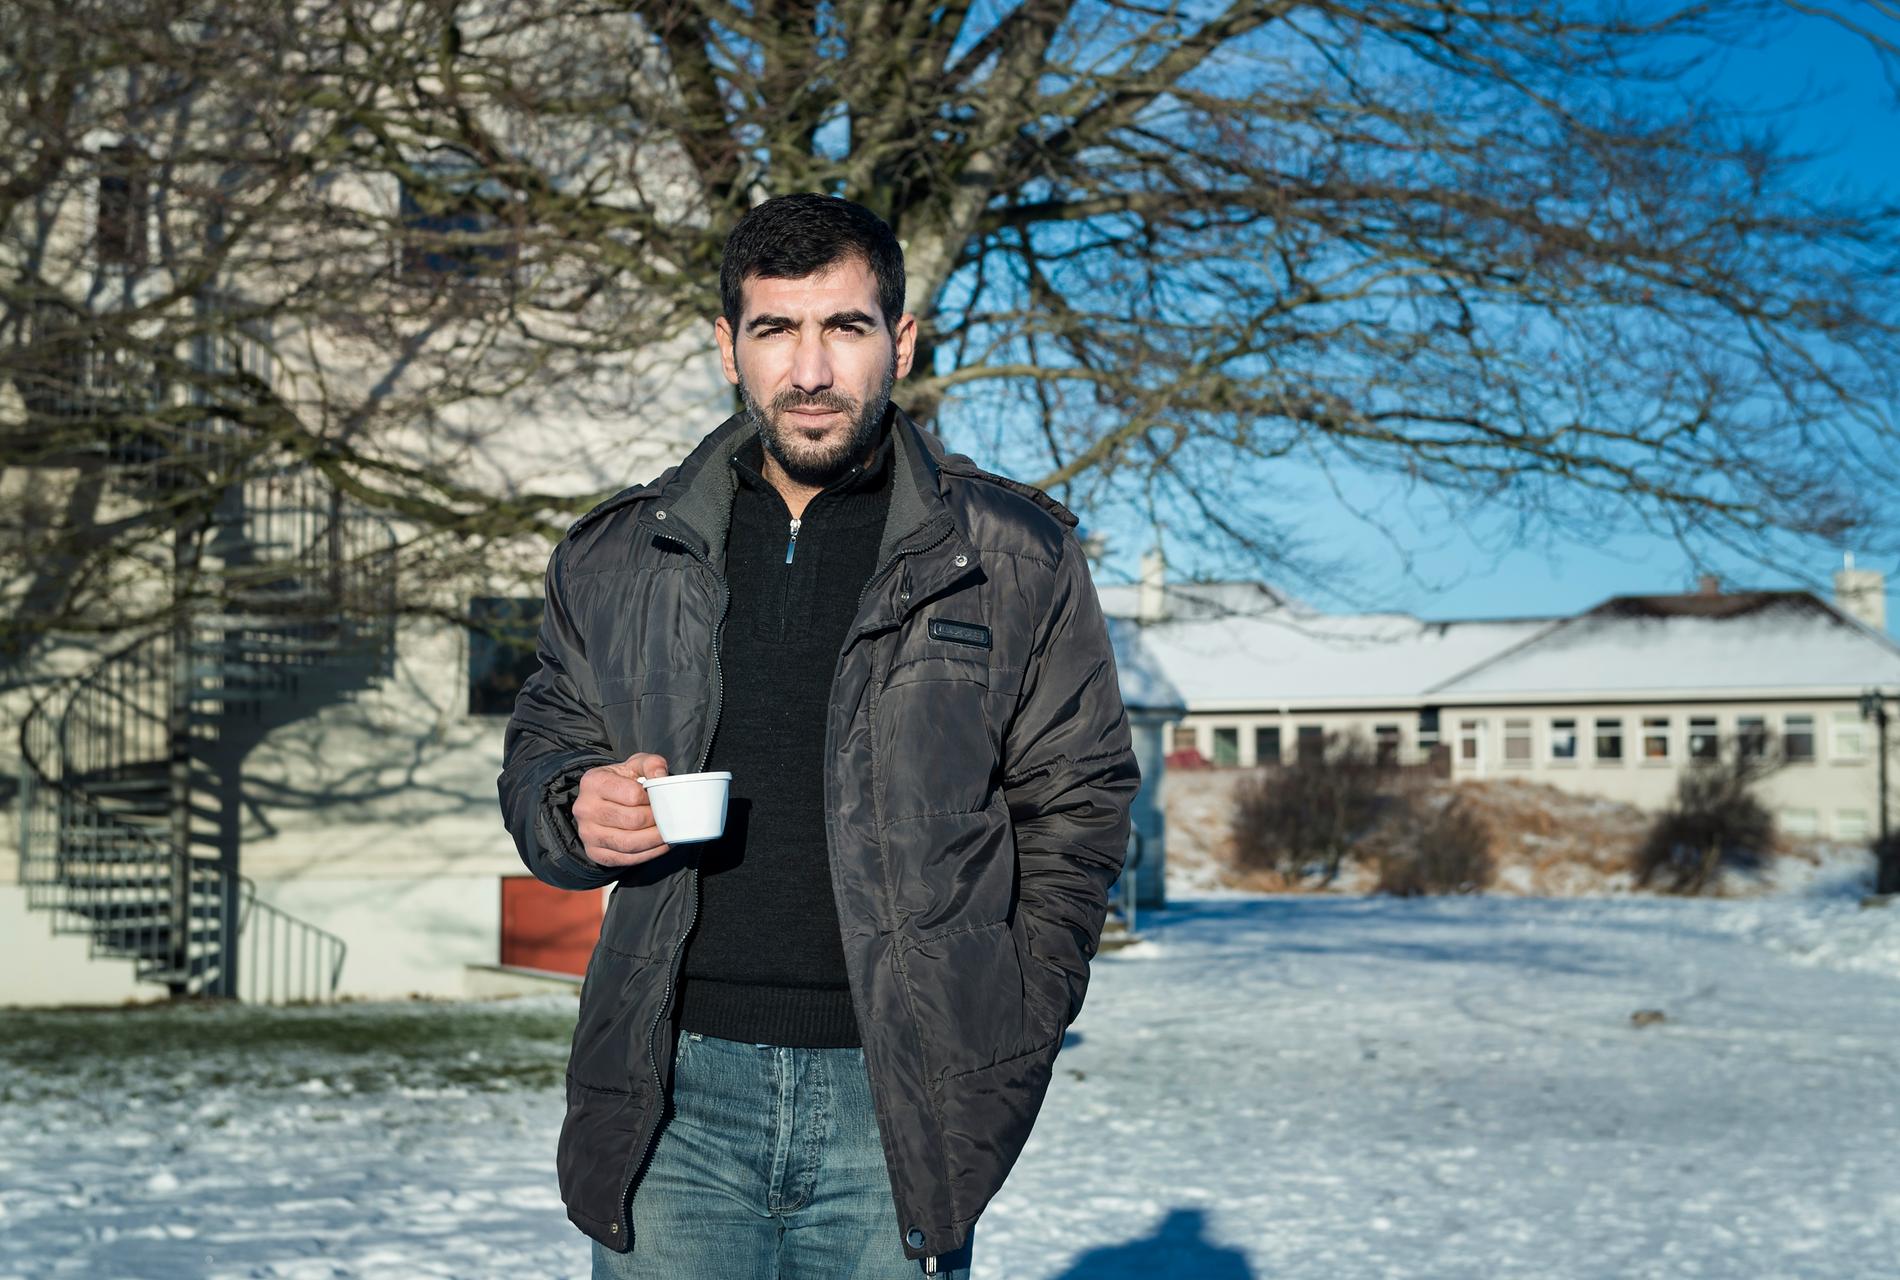 Kursdeltagaren Ibrahim Ibrahim, 35 år, lärare från Syrien blir intervjuad av Norsk media.